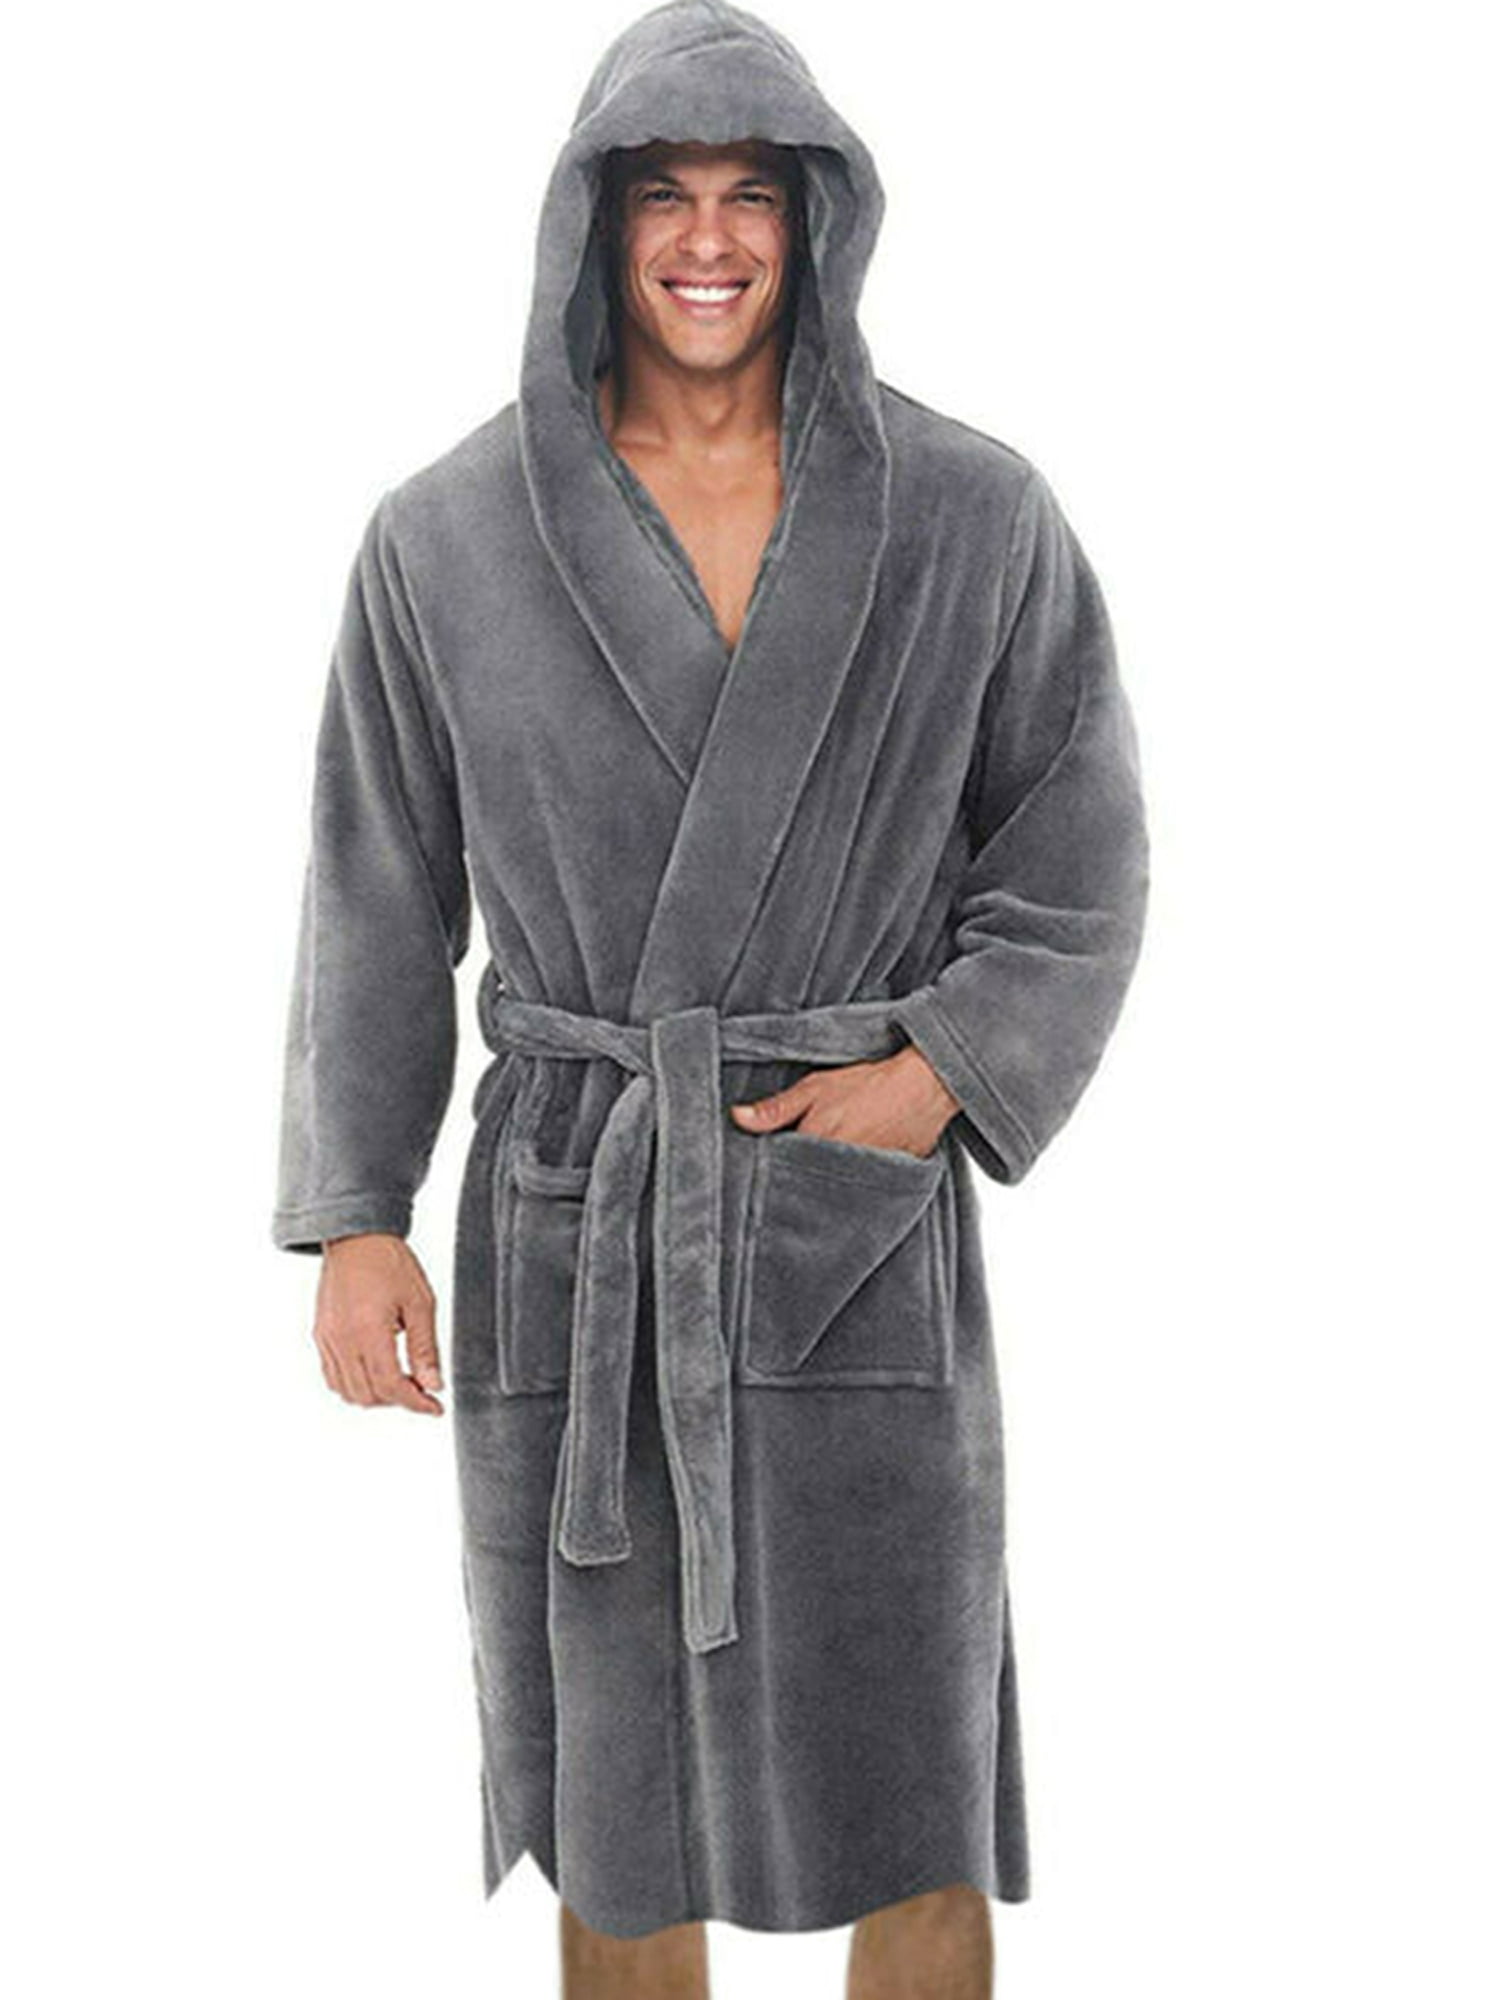 Men Soft Fleece Bath Robe Long Sleeve Hooded Lounge Dressing Gown Full Length 